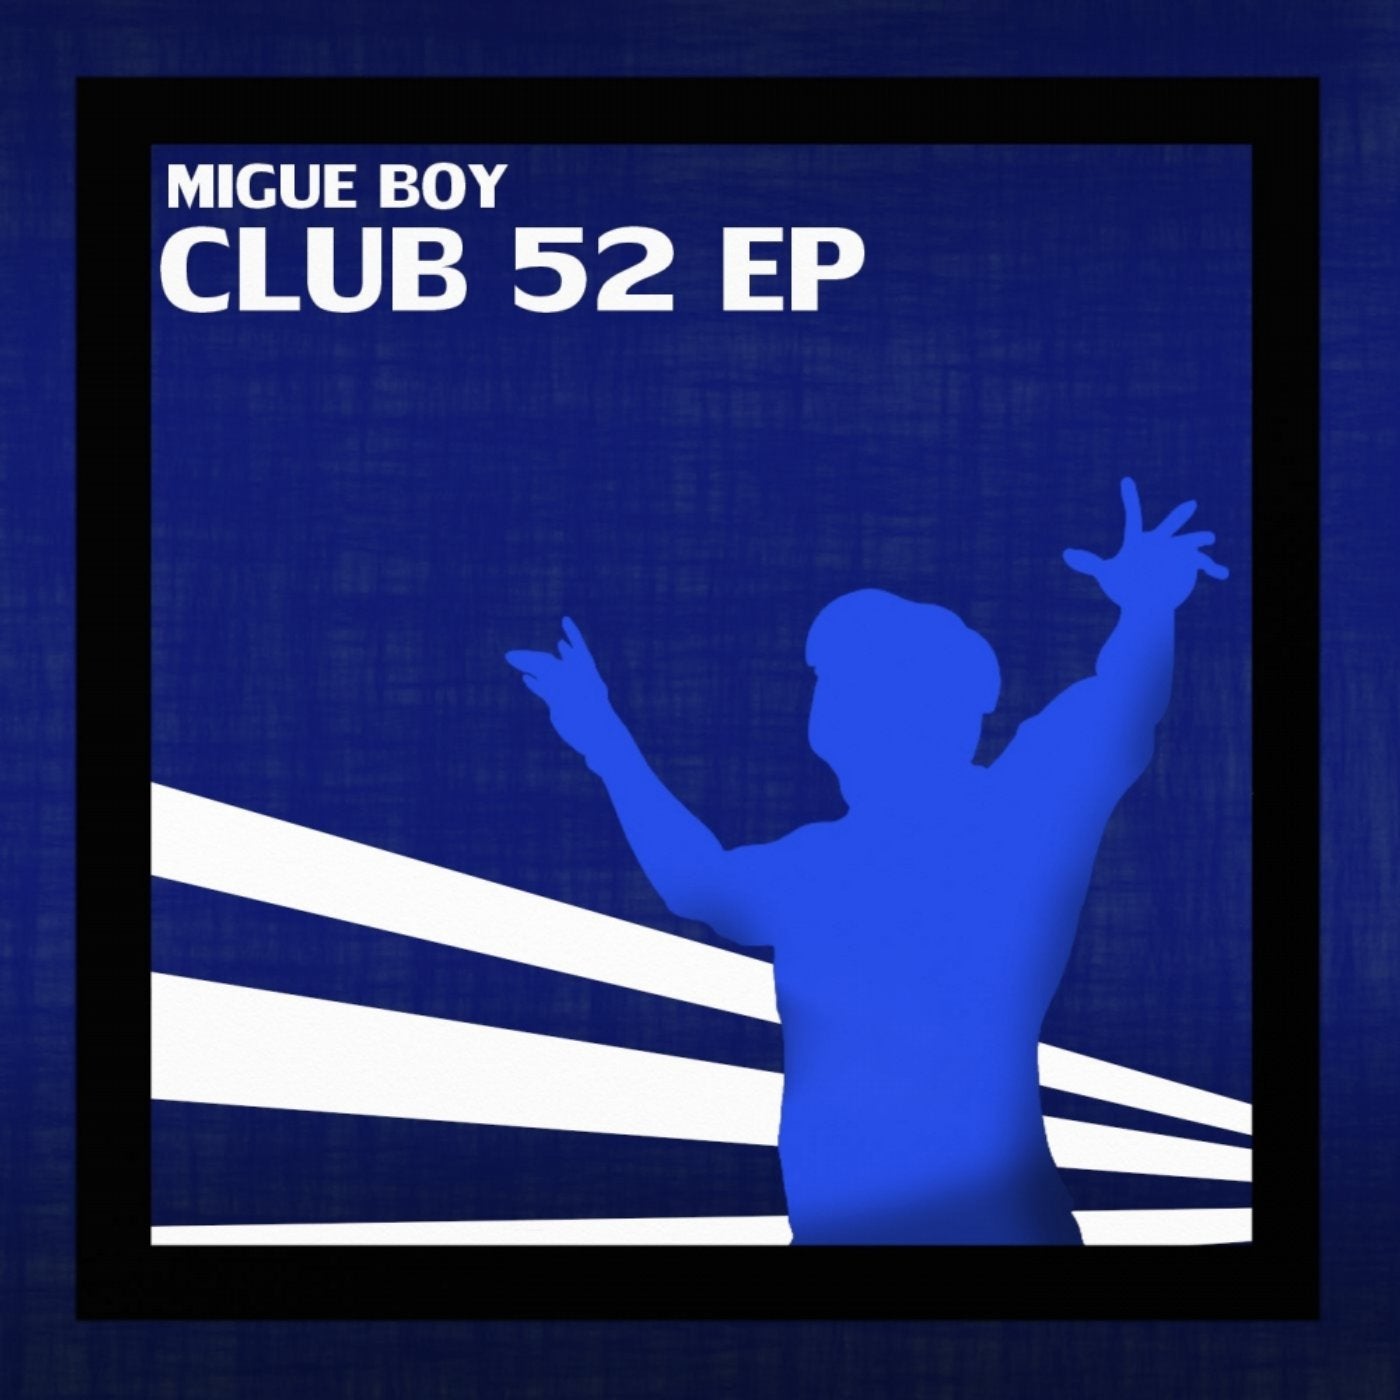 Club 52 EP